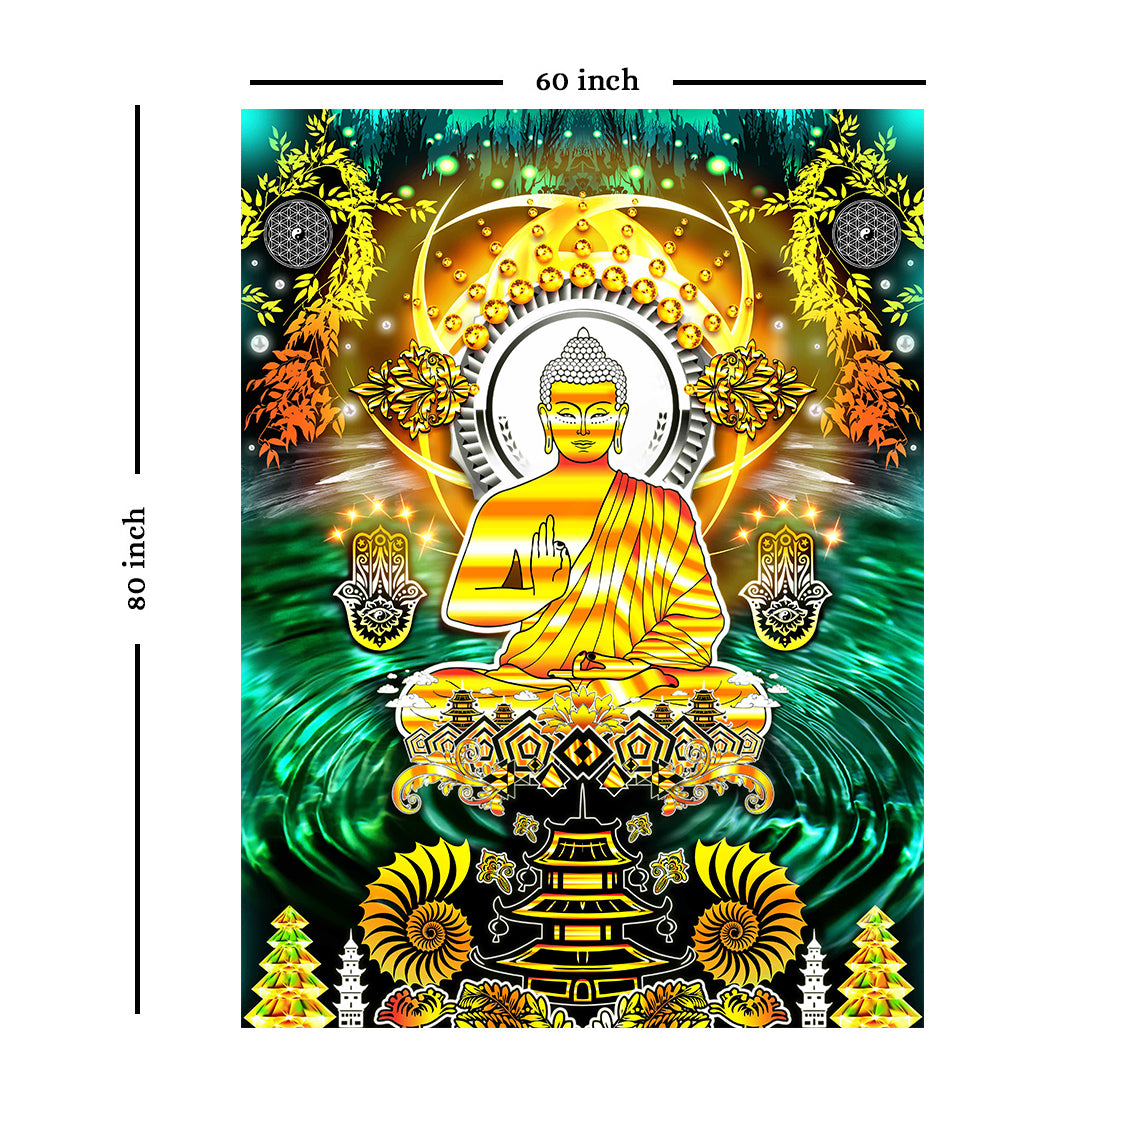 Boeddha wandtapijt (veelkleurig, 80 x 60 inch)